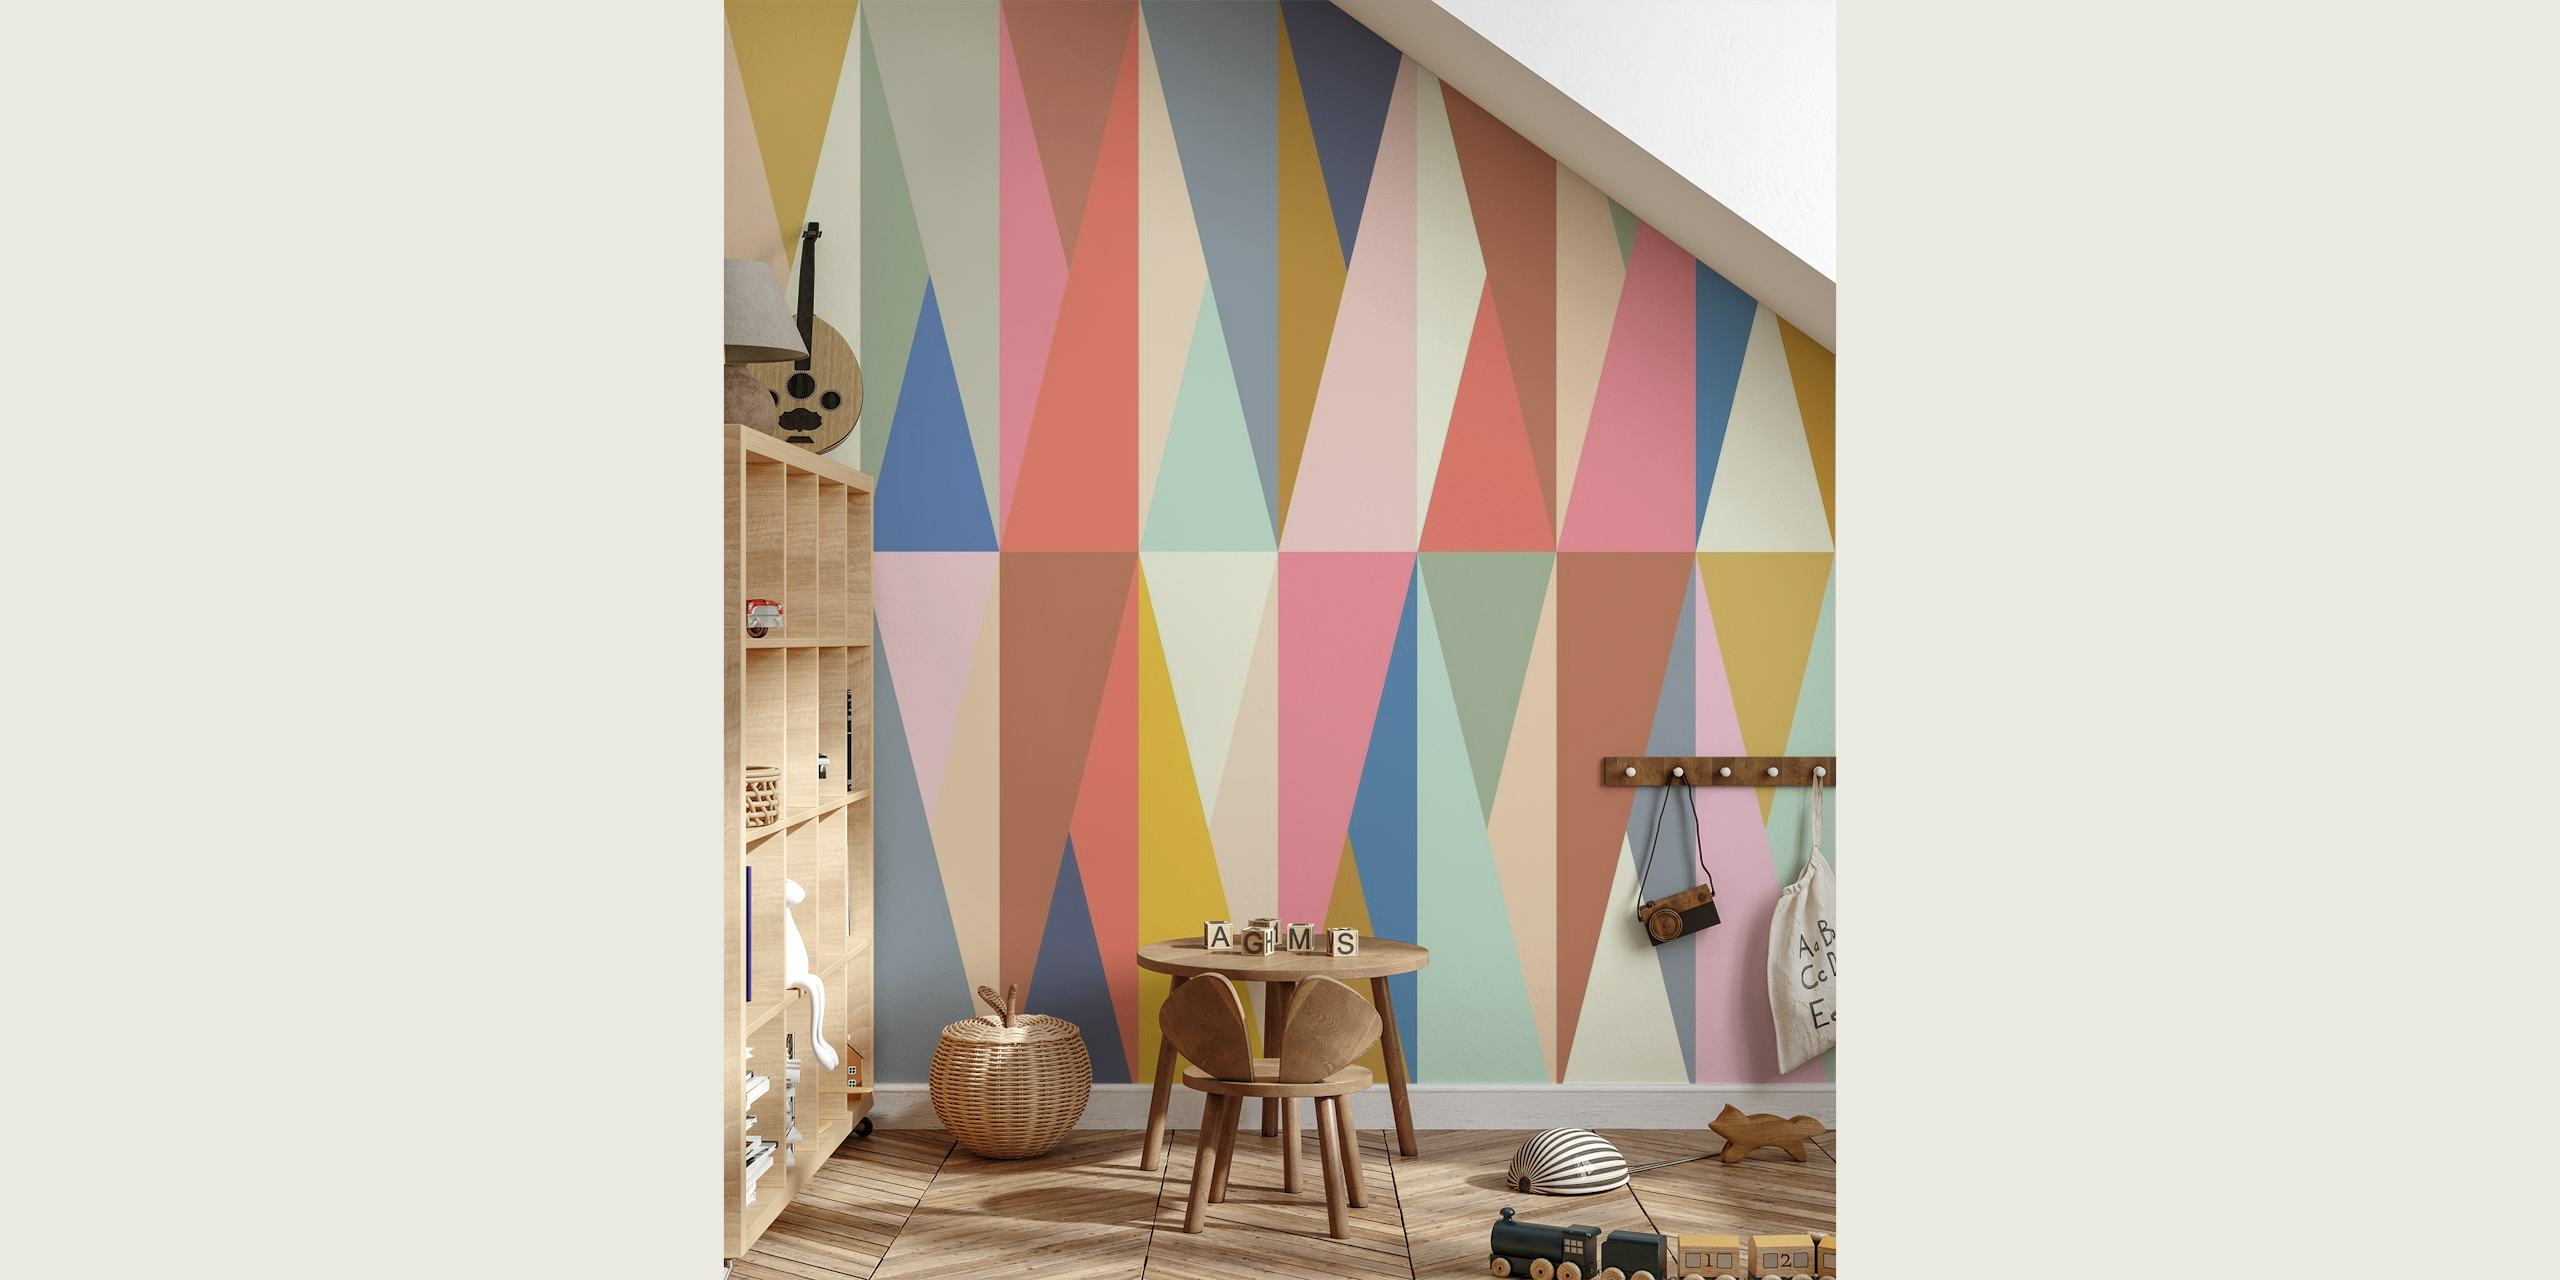 Eclectische muurschildering met geometrisch driehoekspatroon in zachte tinten